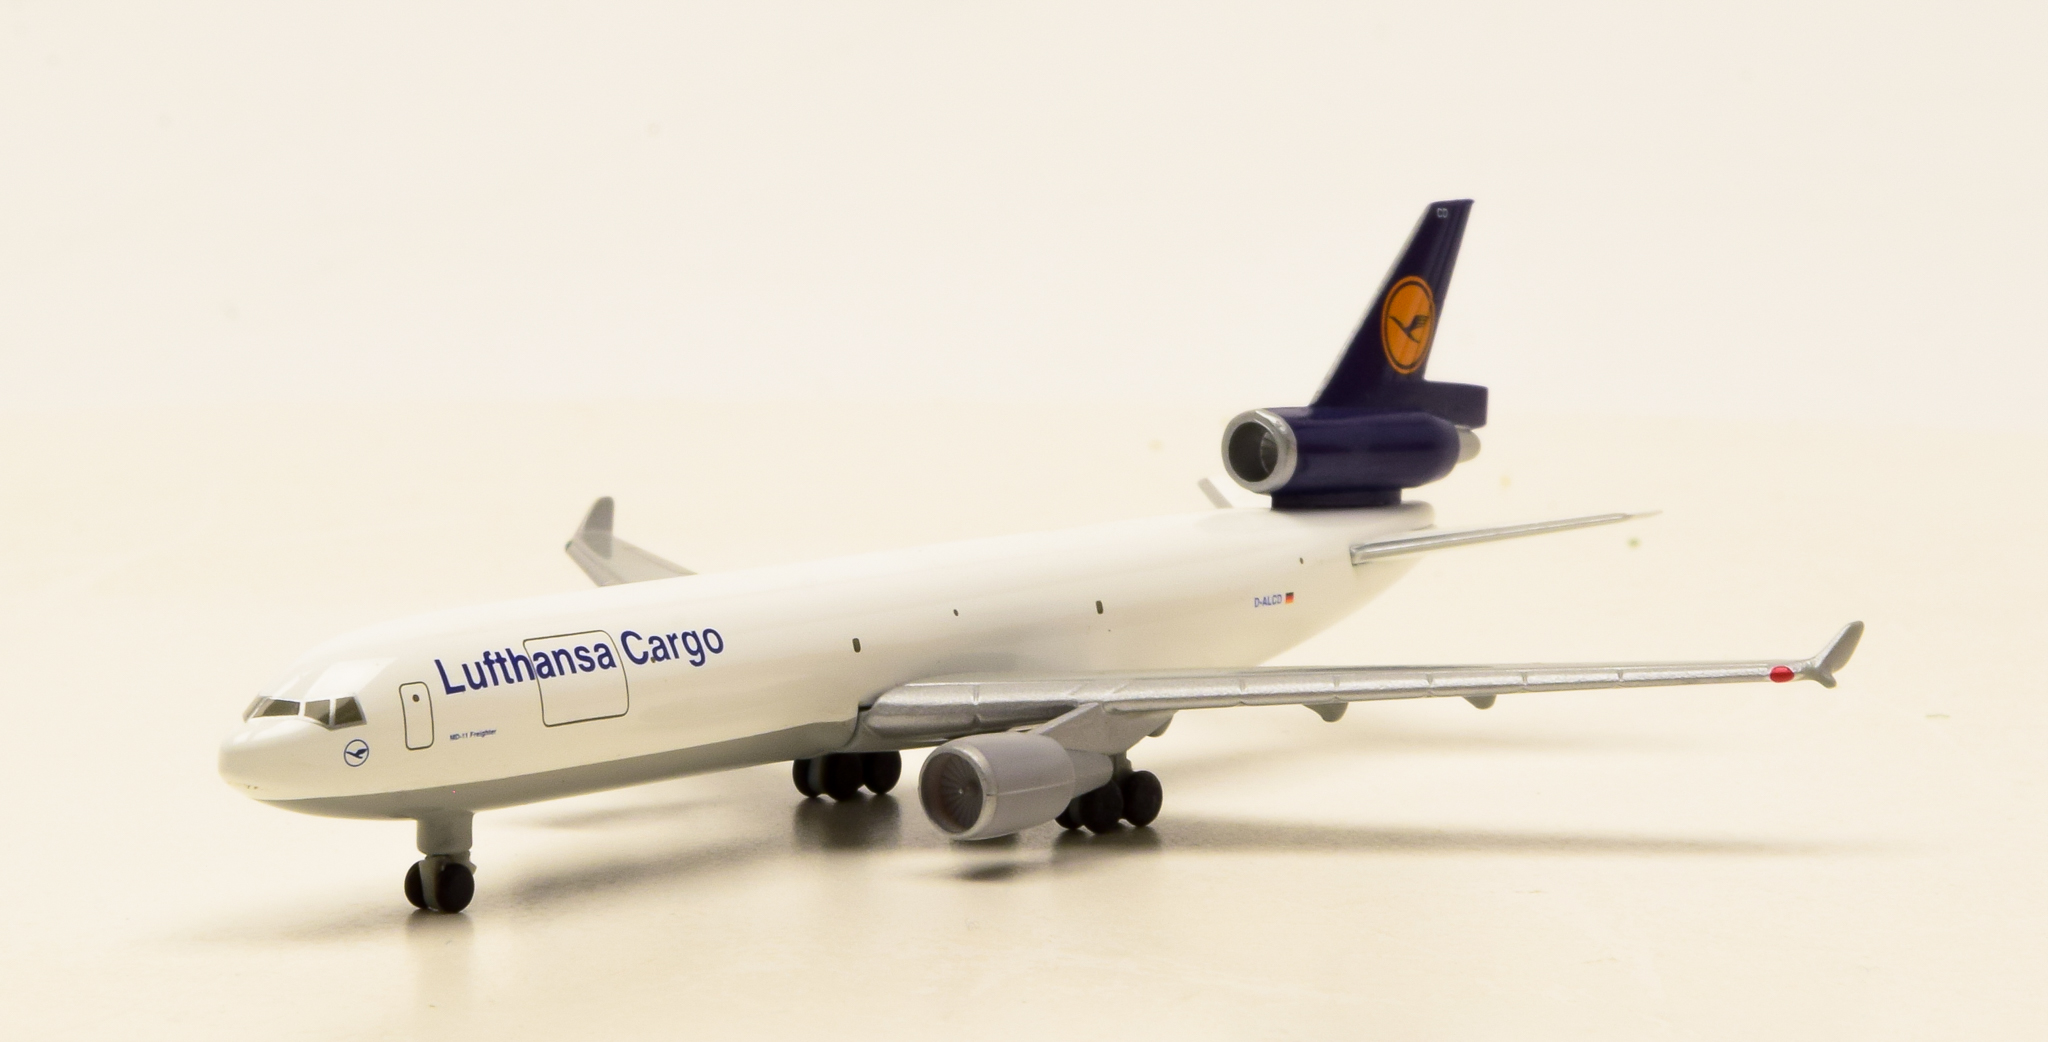 Gebrauchtemodellbahn | Herpa Wings 503549 (1:500) – Boeing McDonnell  Douglas MD-11F der Lufthansa Cargo